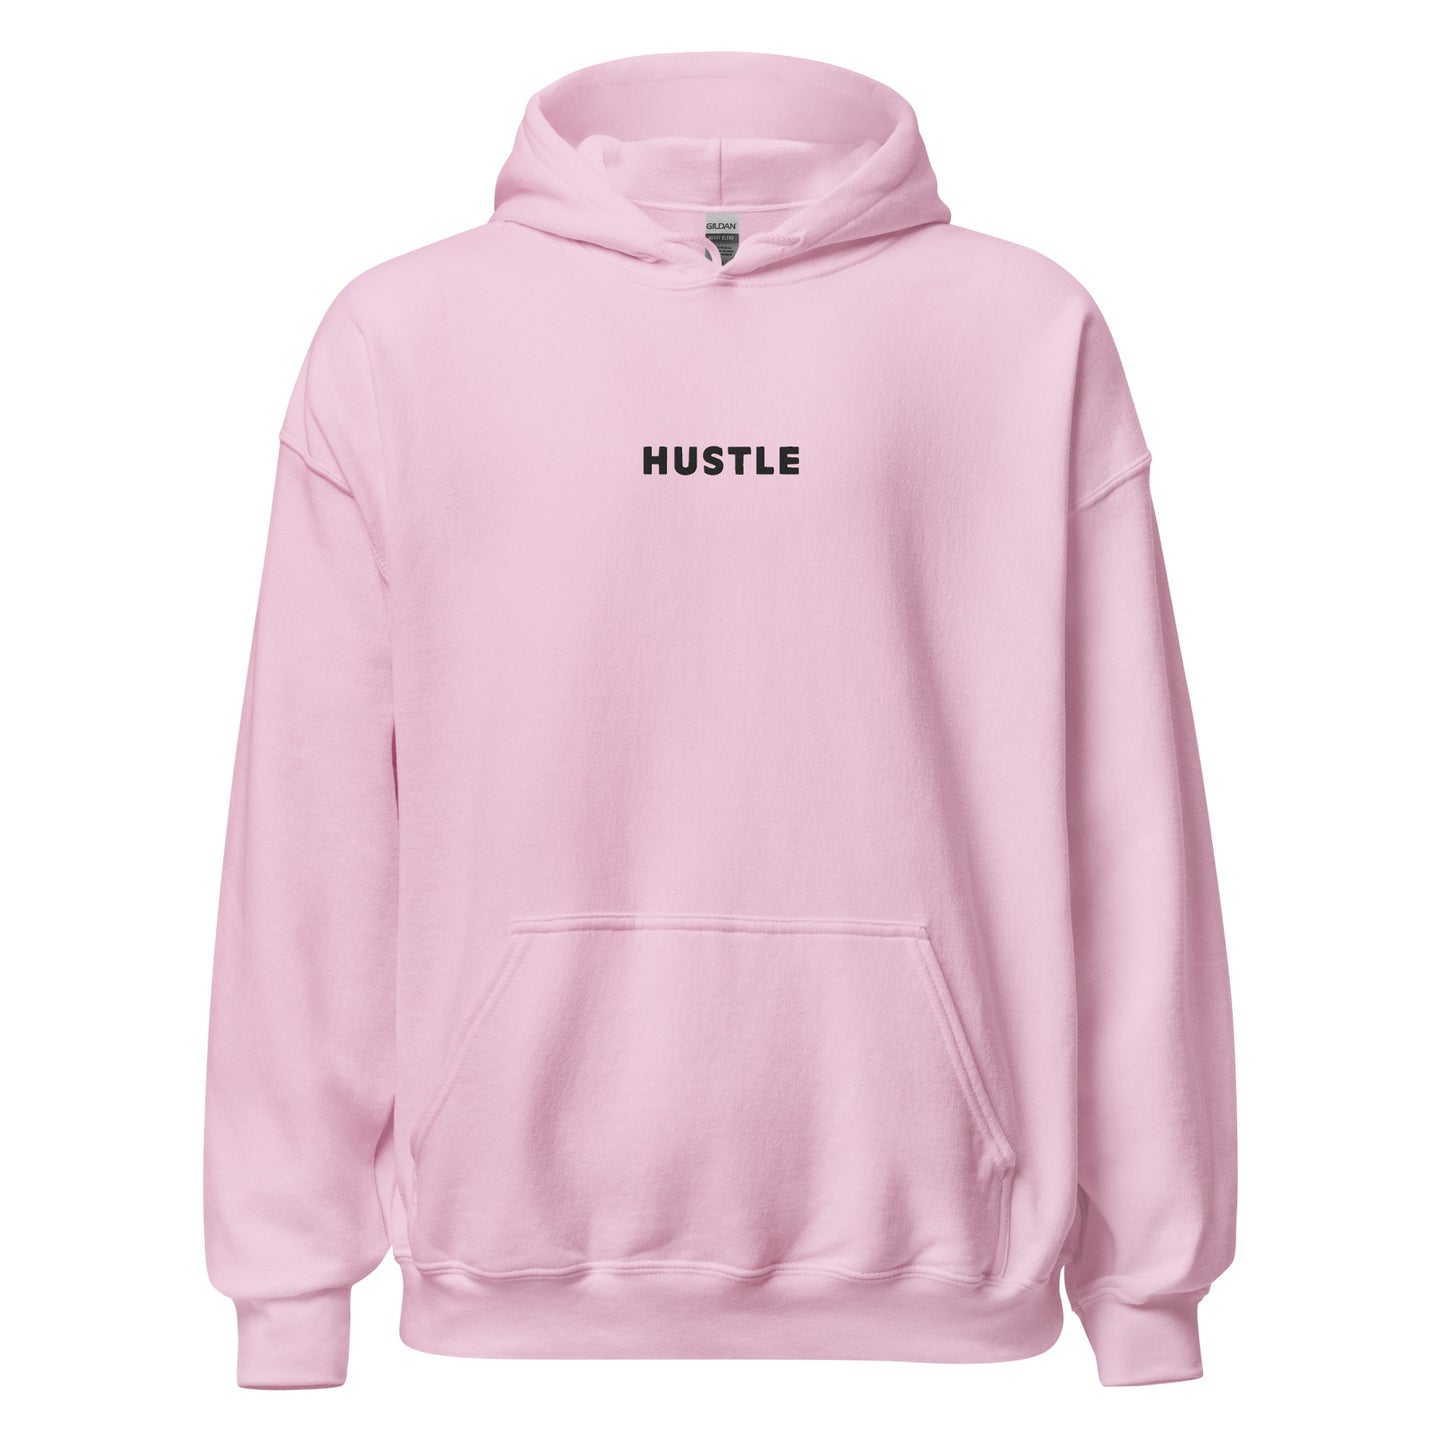 Hustle - Pink Adult Hoodie